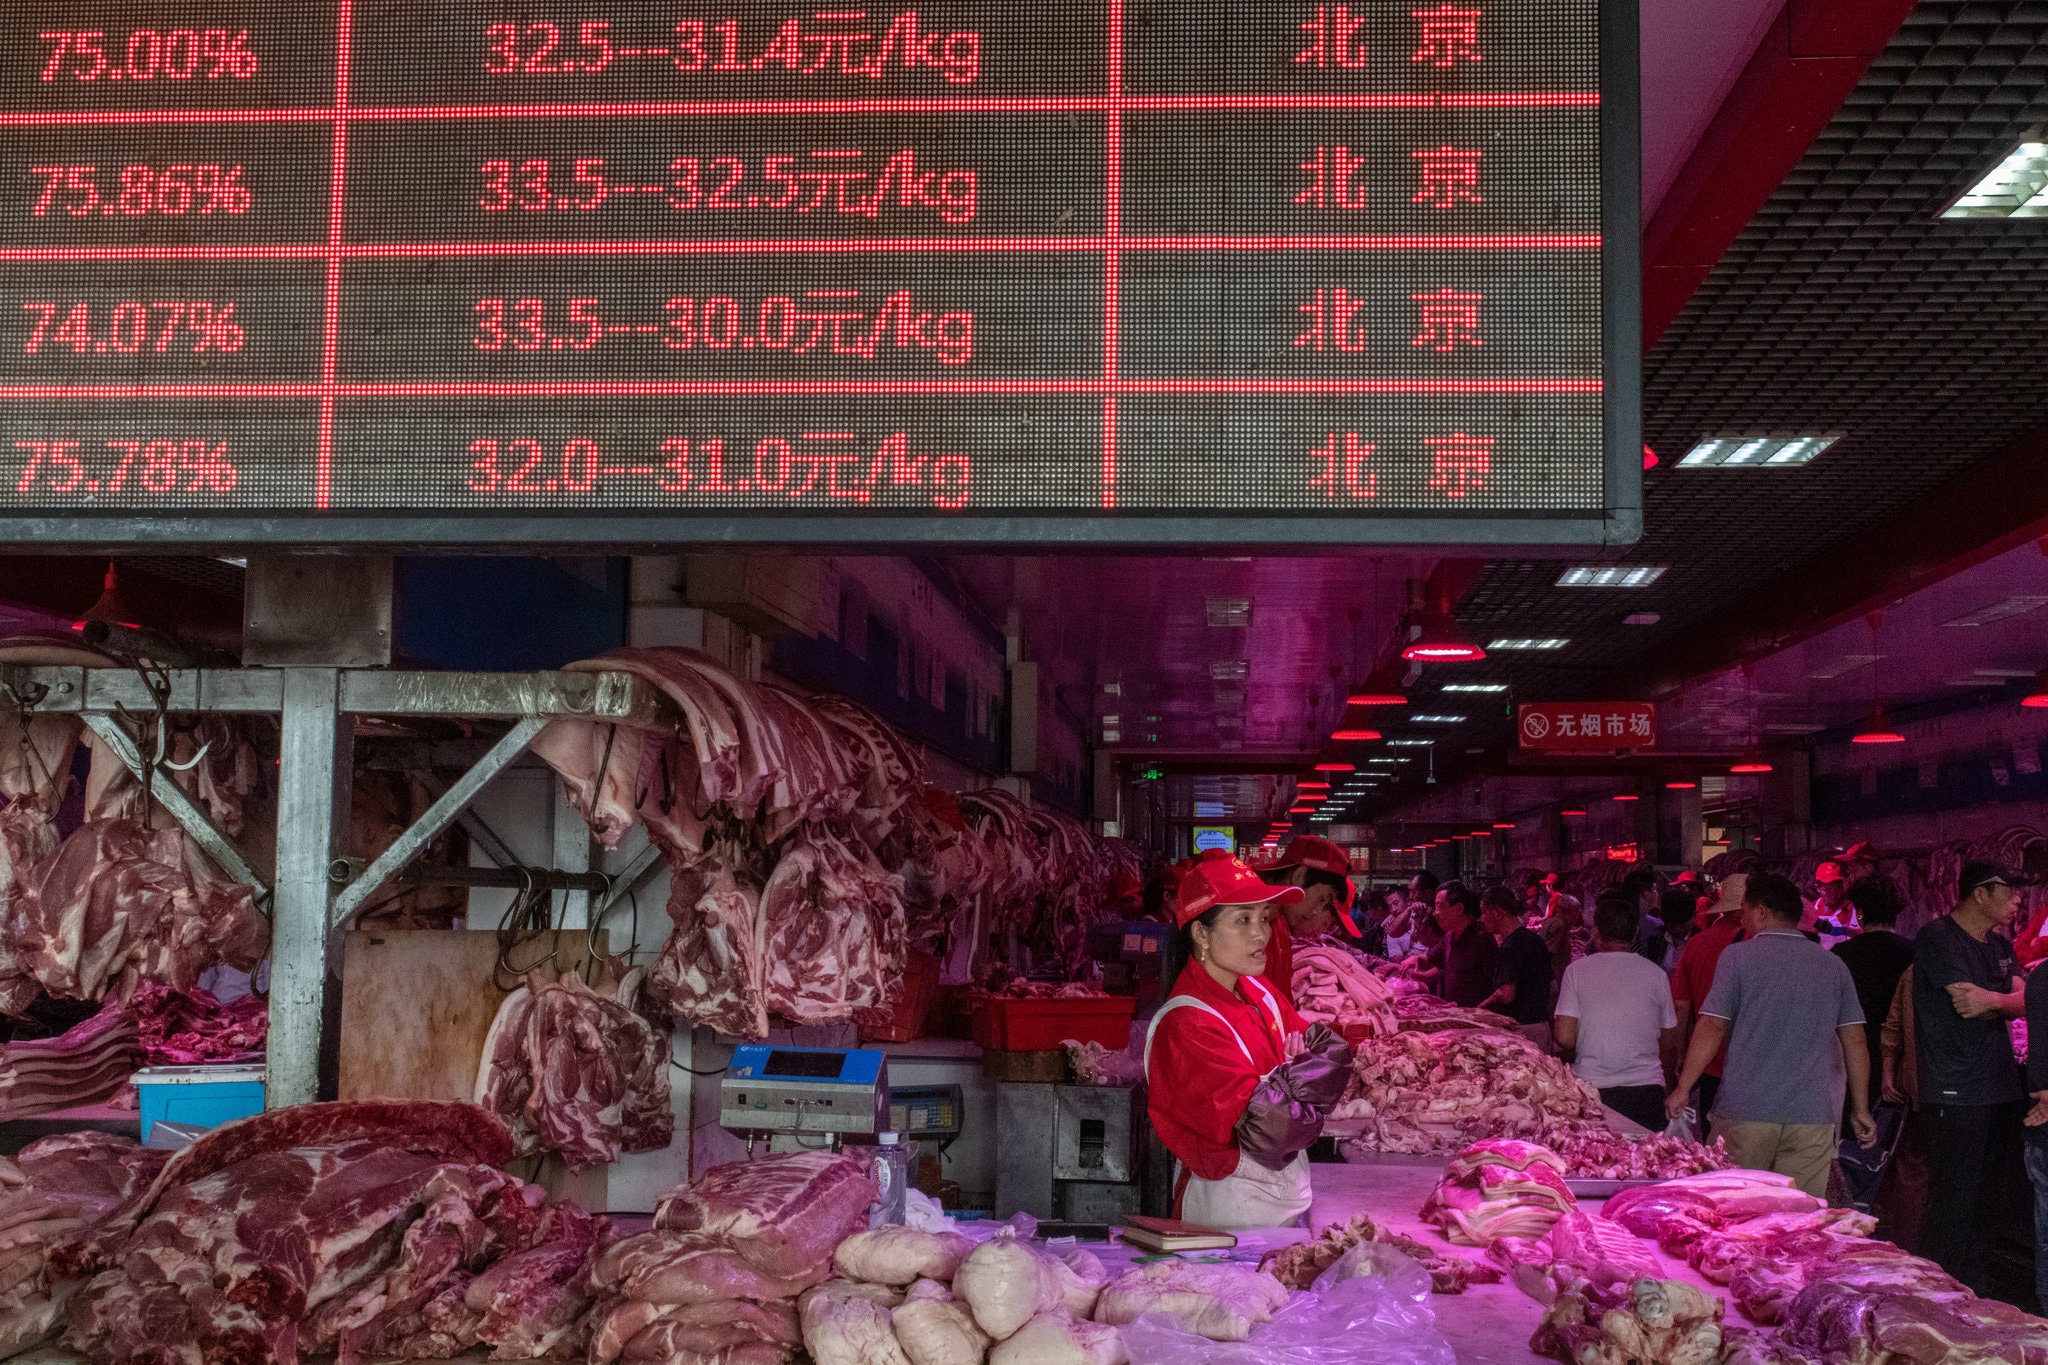 Bí mật bên trong kho dự trữ thịt lợn chiến lược của Trung Quốc